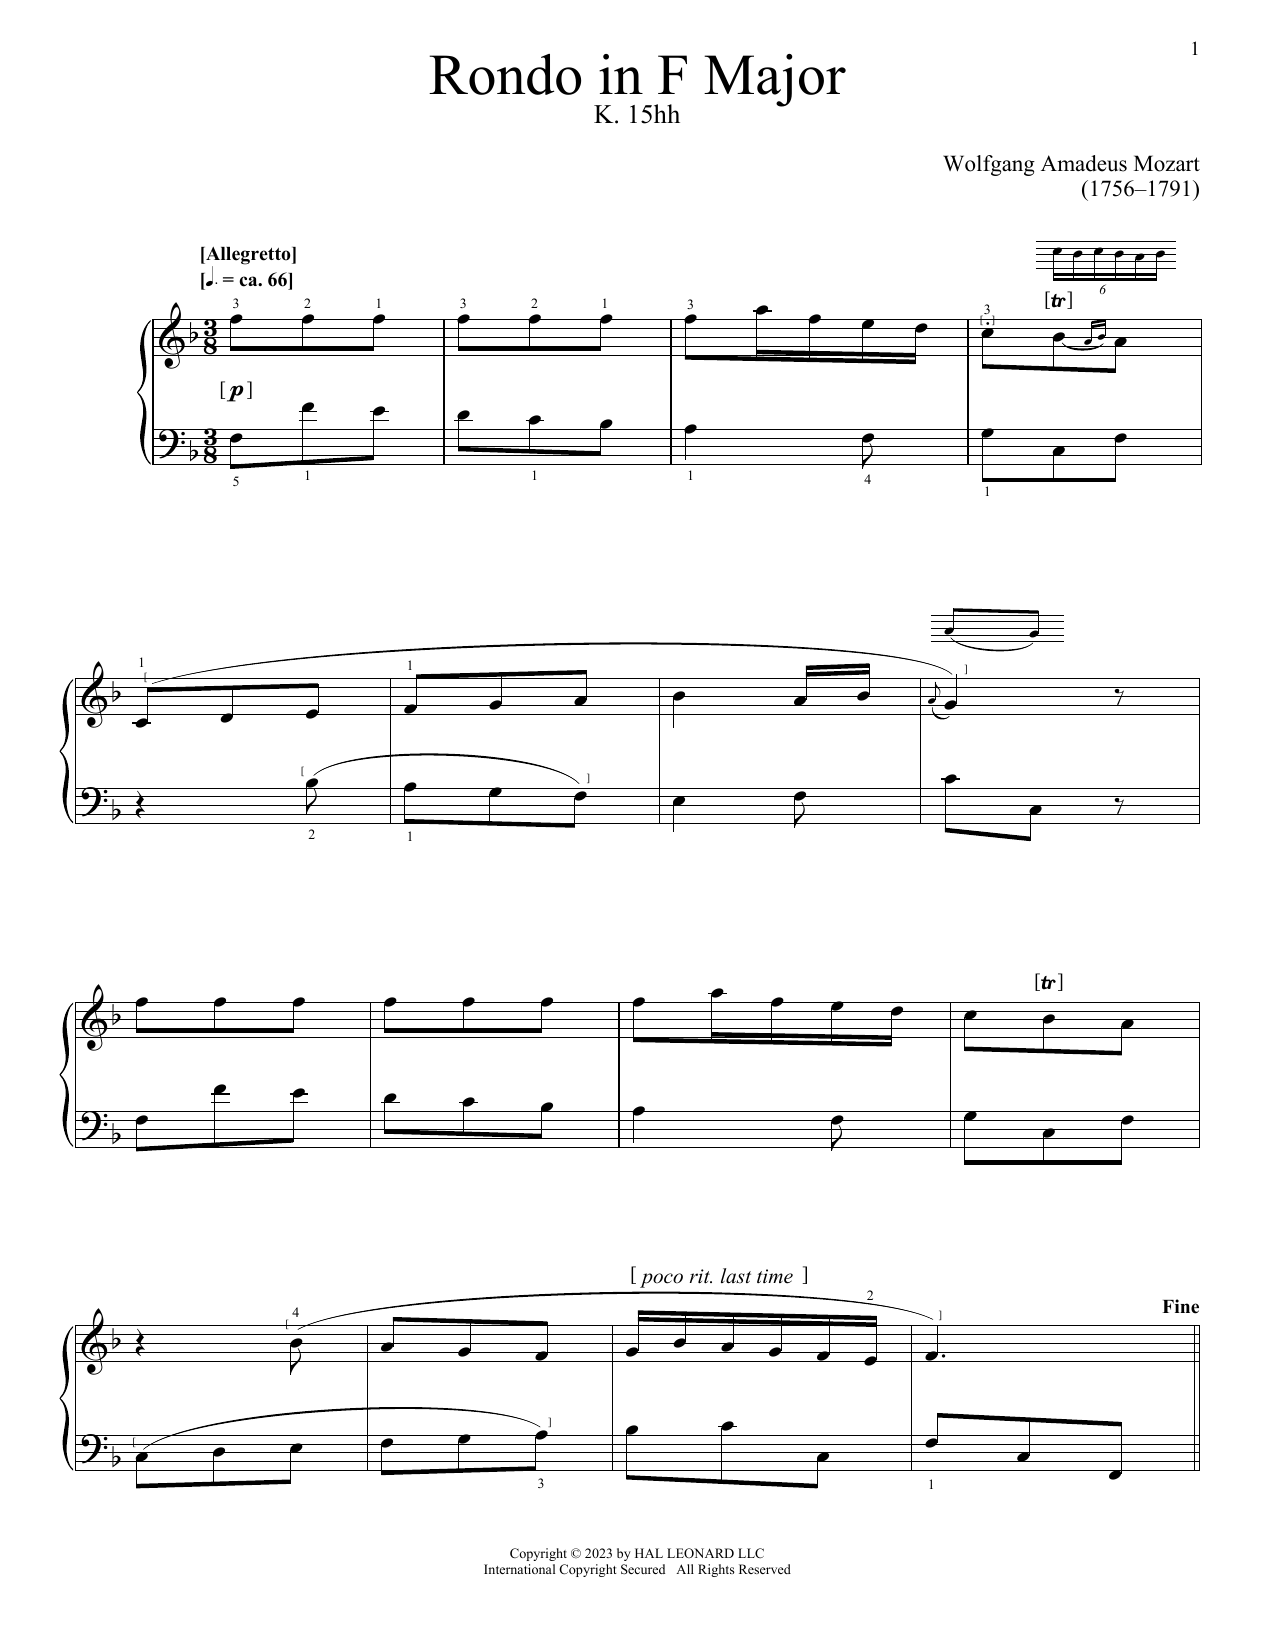 Download Wolfgang Amadeus Mozart Rondo, K. 15hh Sheet Music